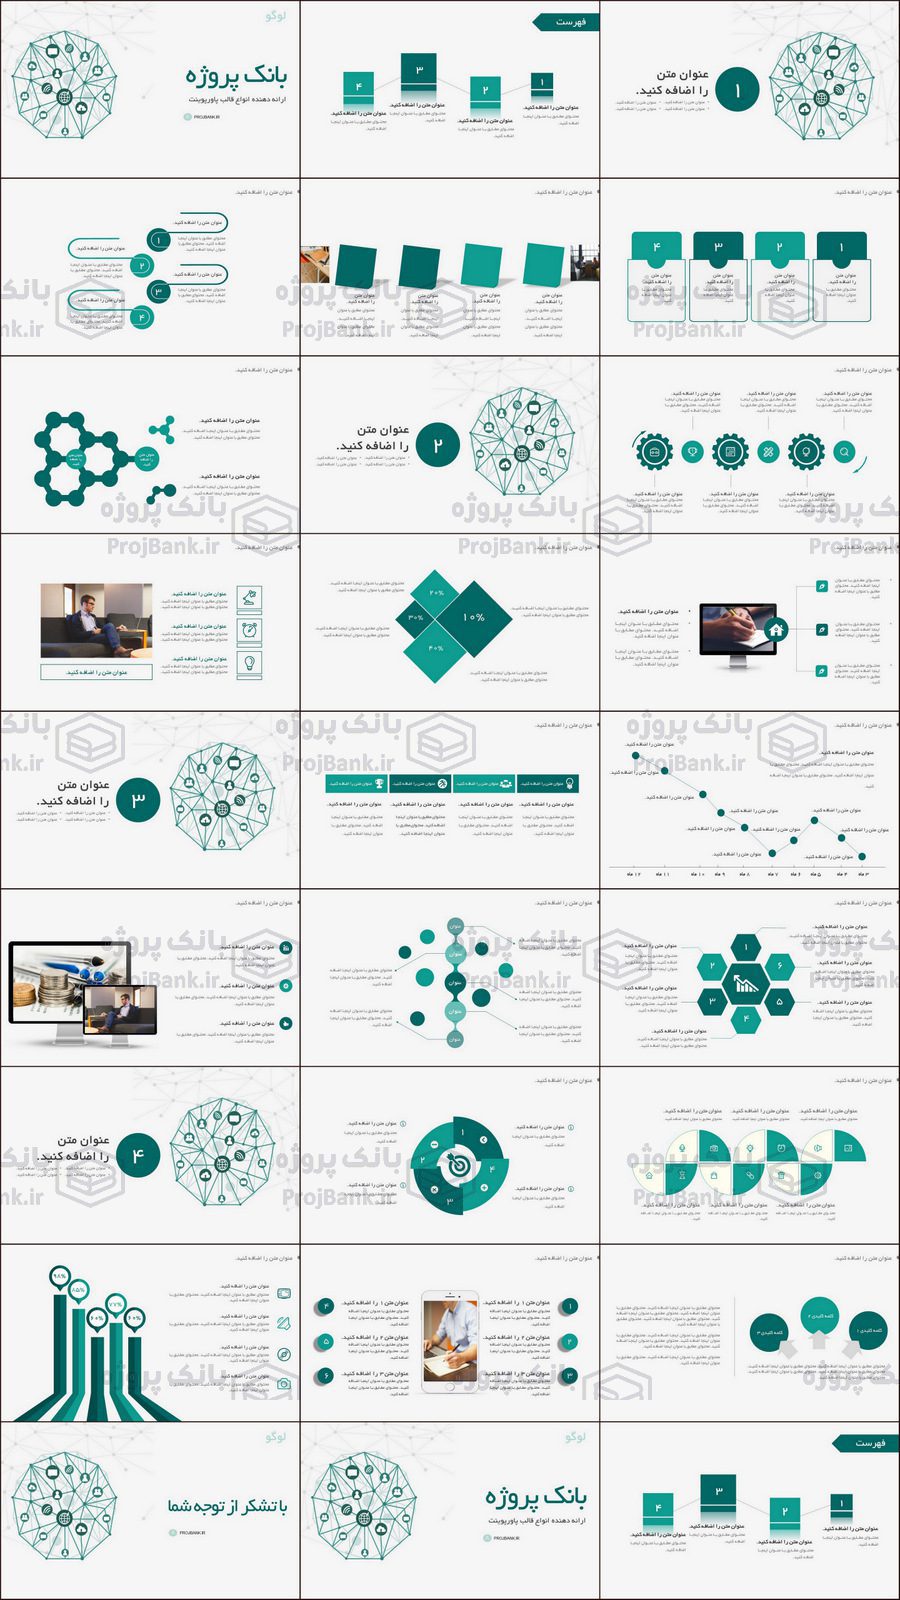 تصویر کلی از تمام اسلاید های قالب پاورپوینت تجاری گزارش پروژه های اینترنتی